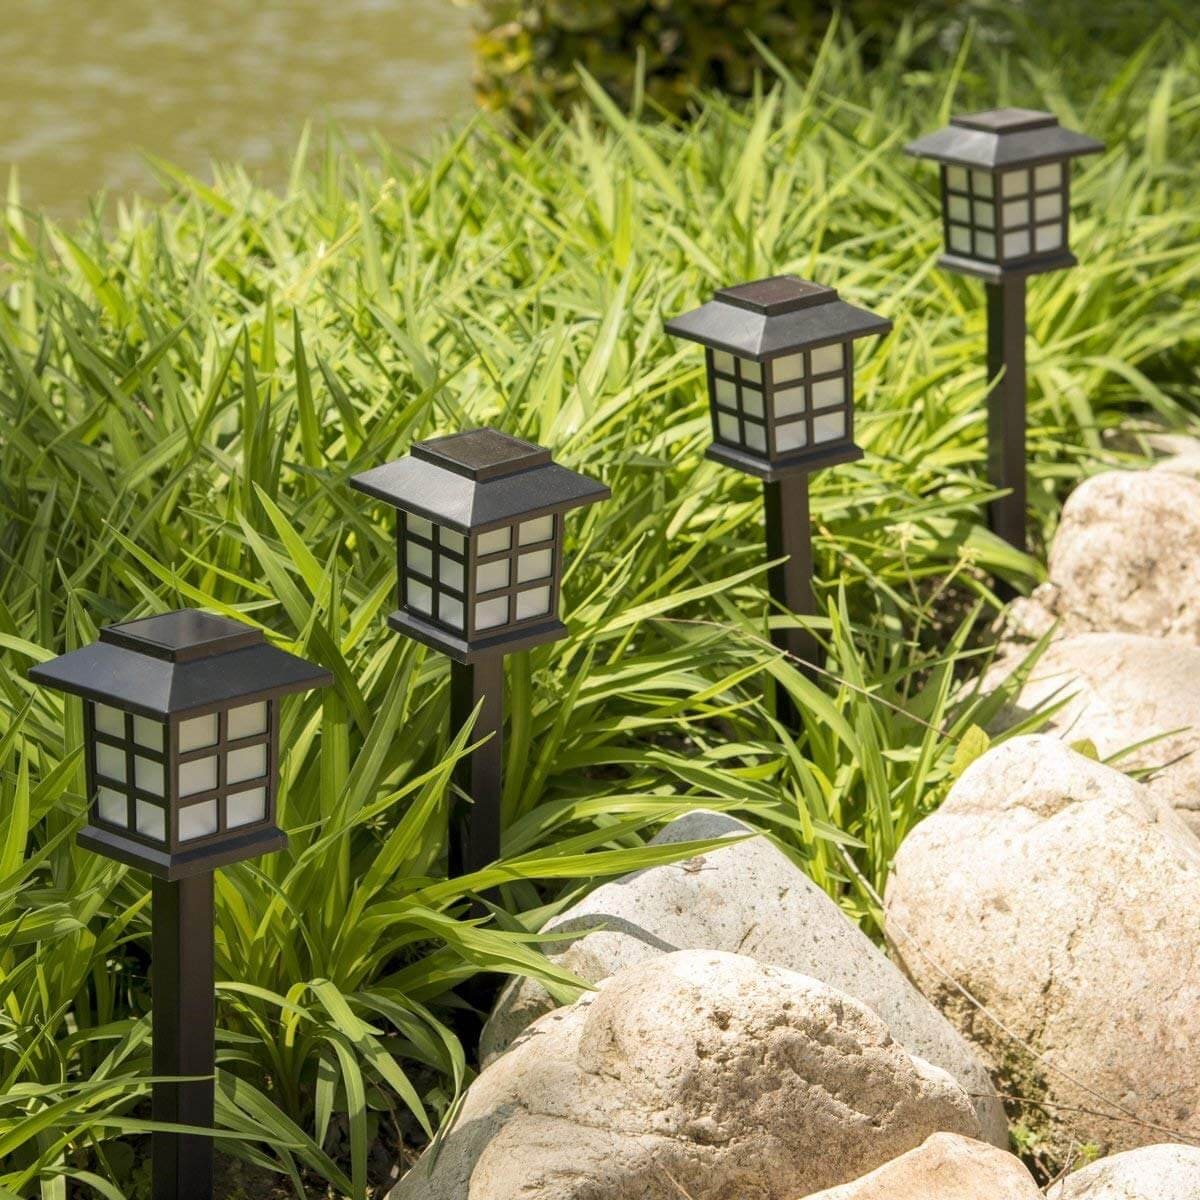 Top 5 mẫu đèn sân vườn được ưa chuộng năm 2019